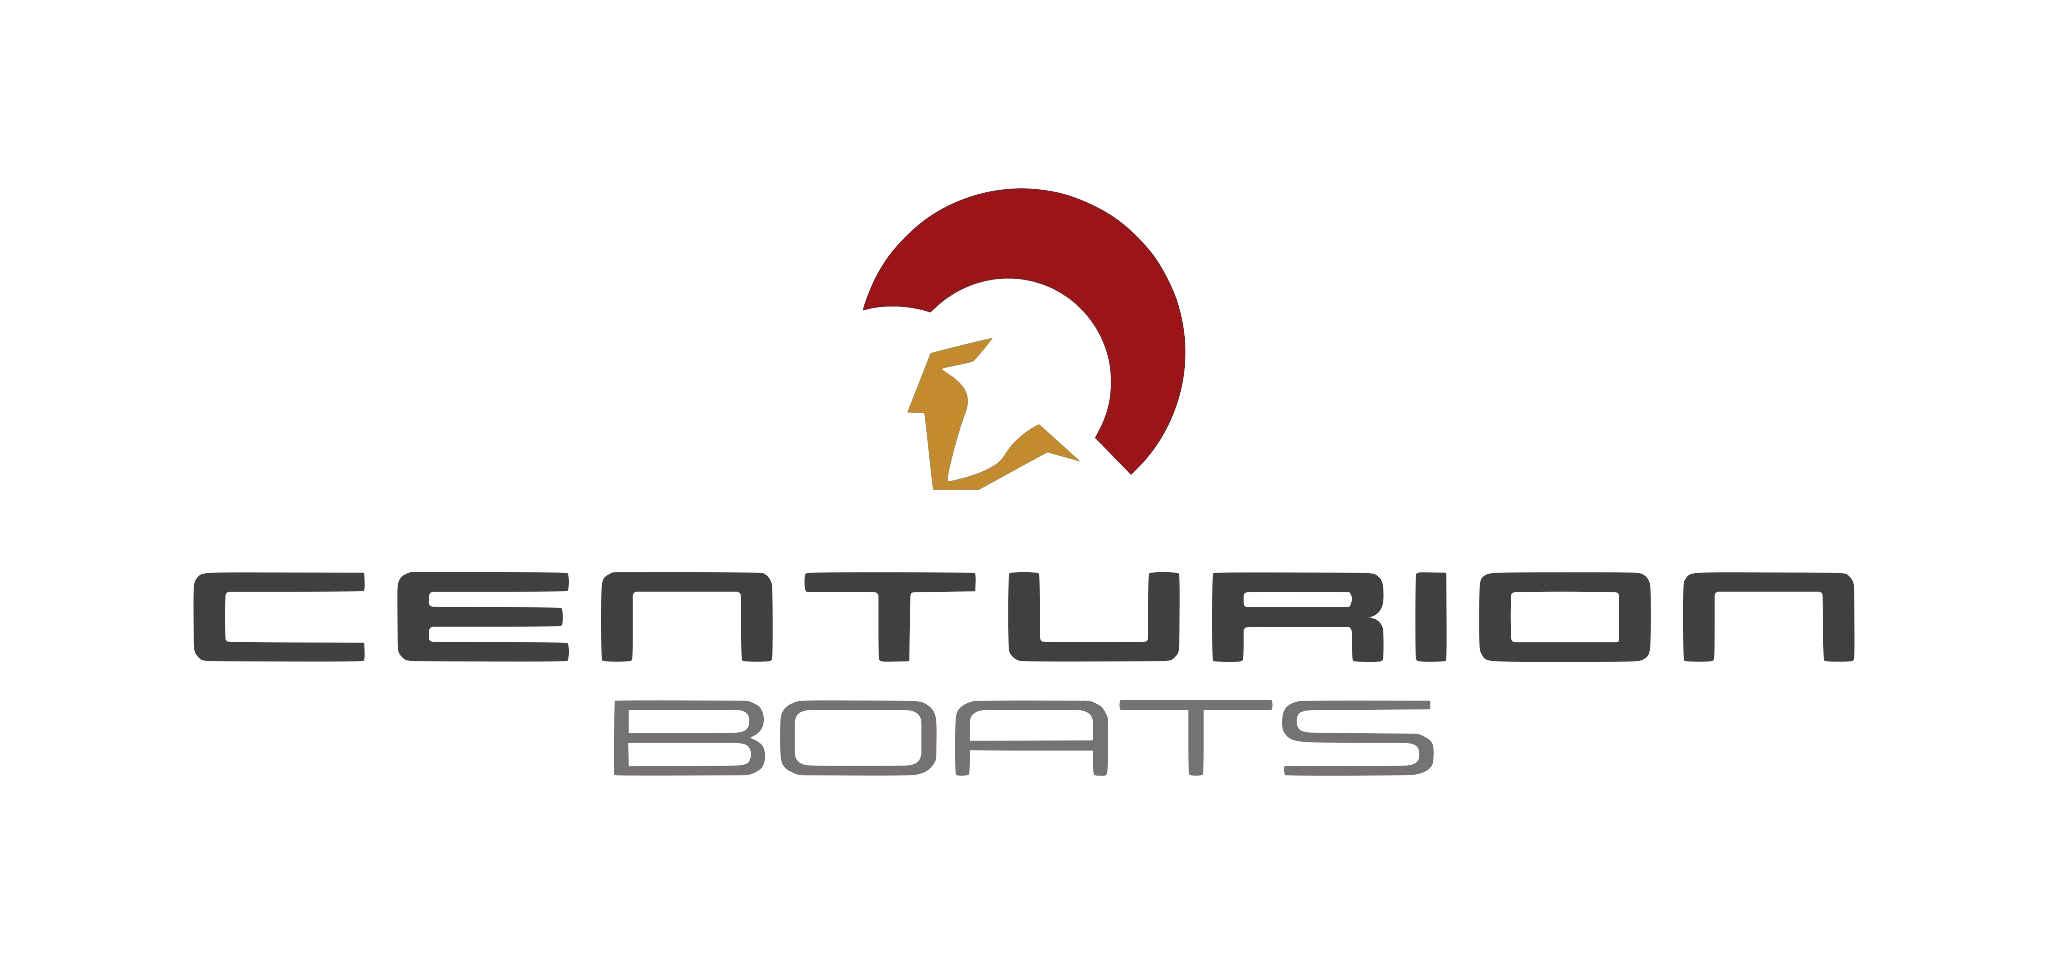 Go to centurionboats.com